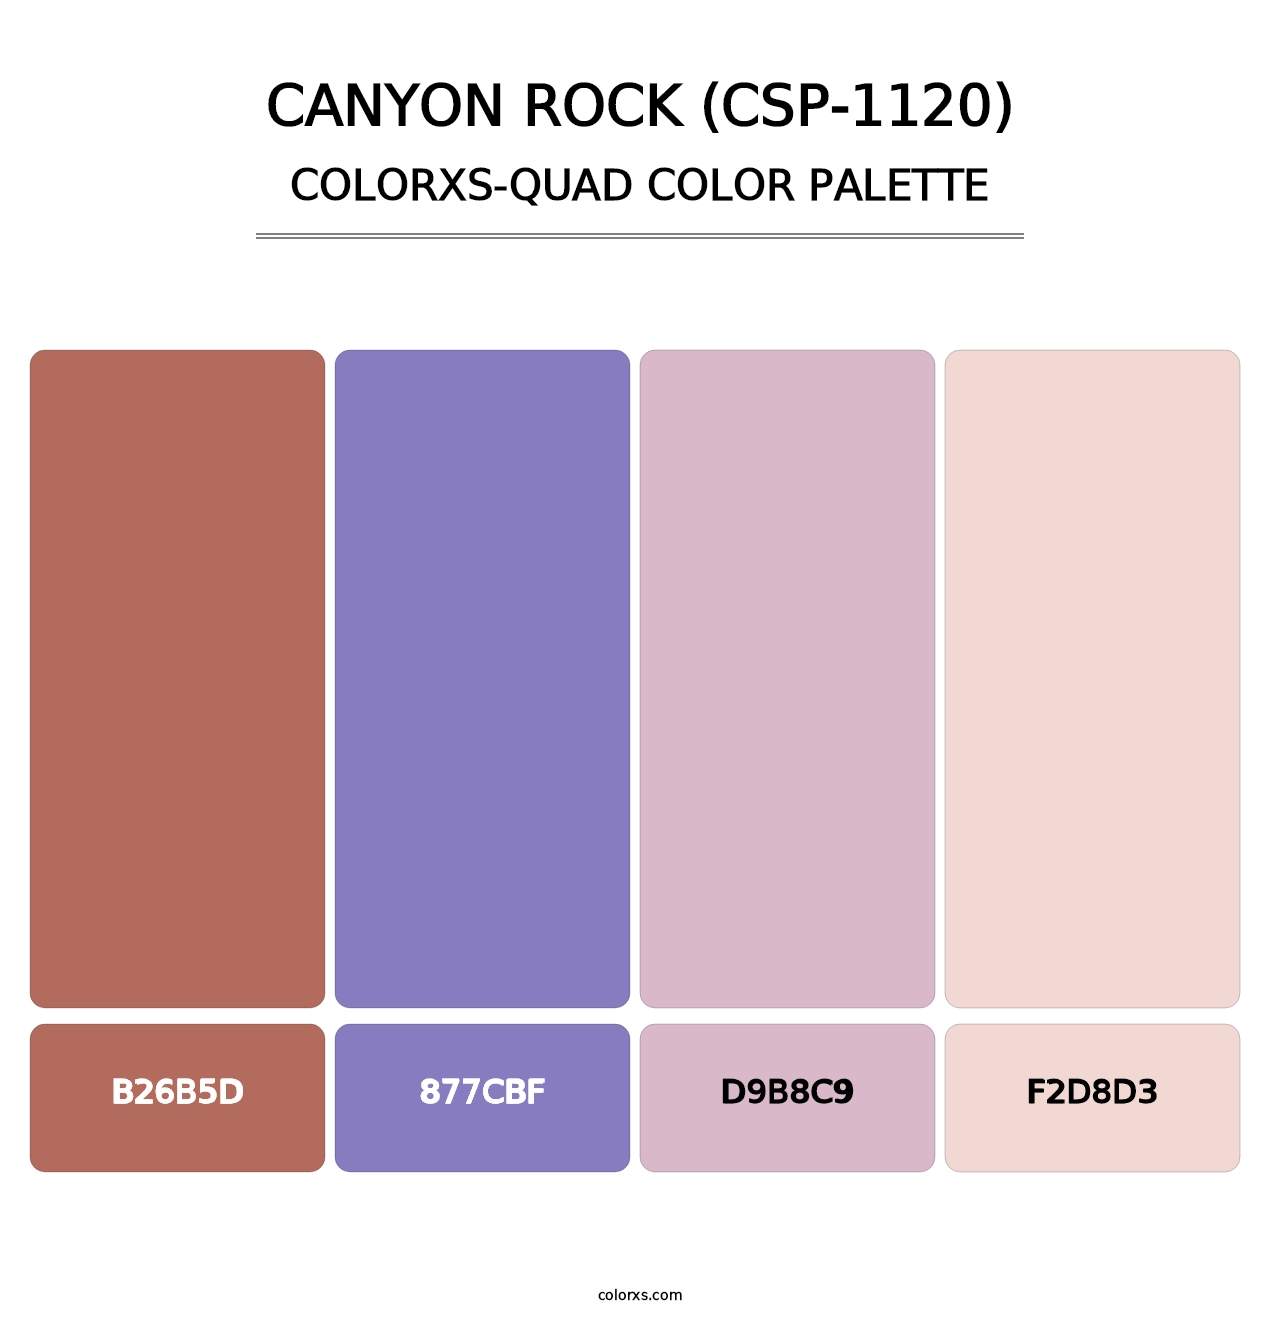 Canyon Rock (CSP-1120) - Colorxs Quad Palette